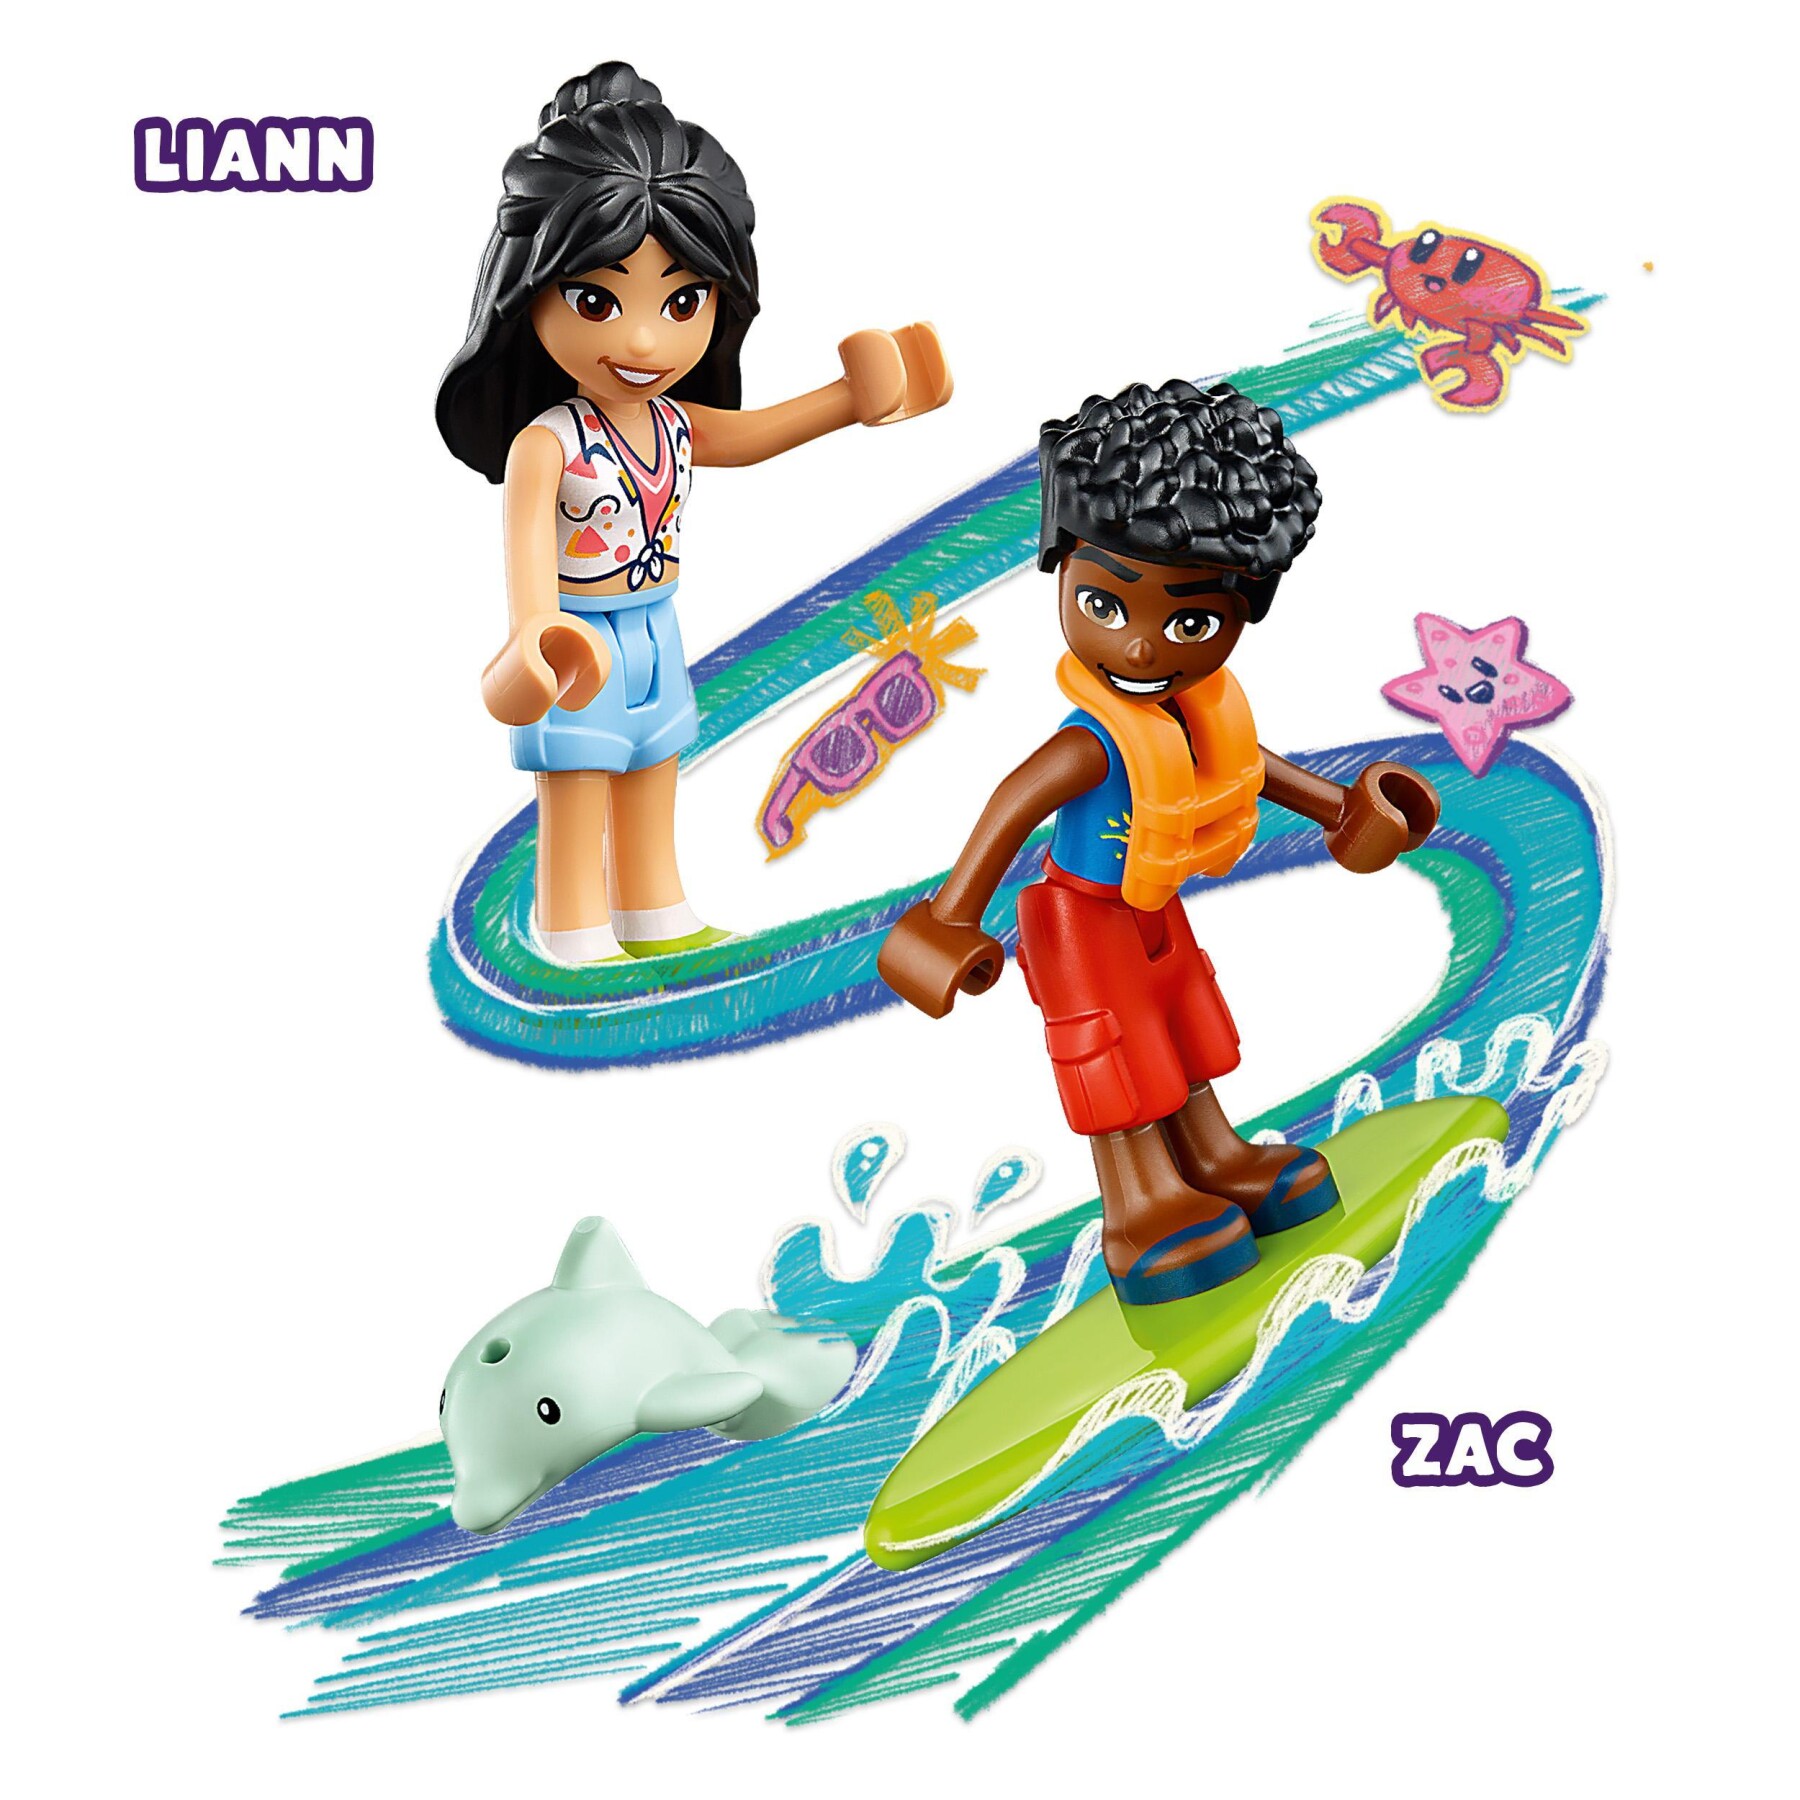 Lego friends 41725 divertimento sul beach buggy con macchina giocattolo, surf, mini bamboline, delfino e cane, giochi estivi - LEGO FRIENDS